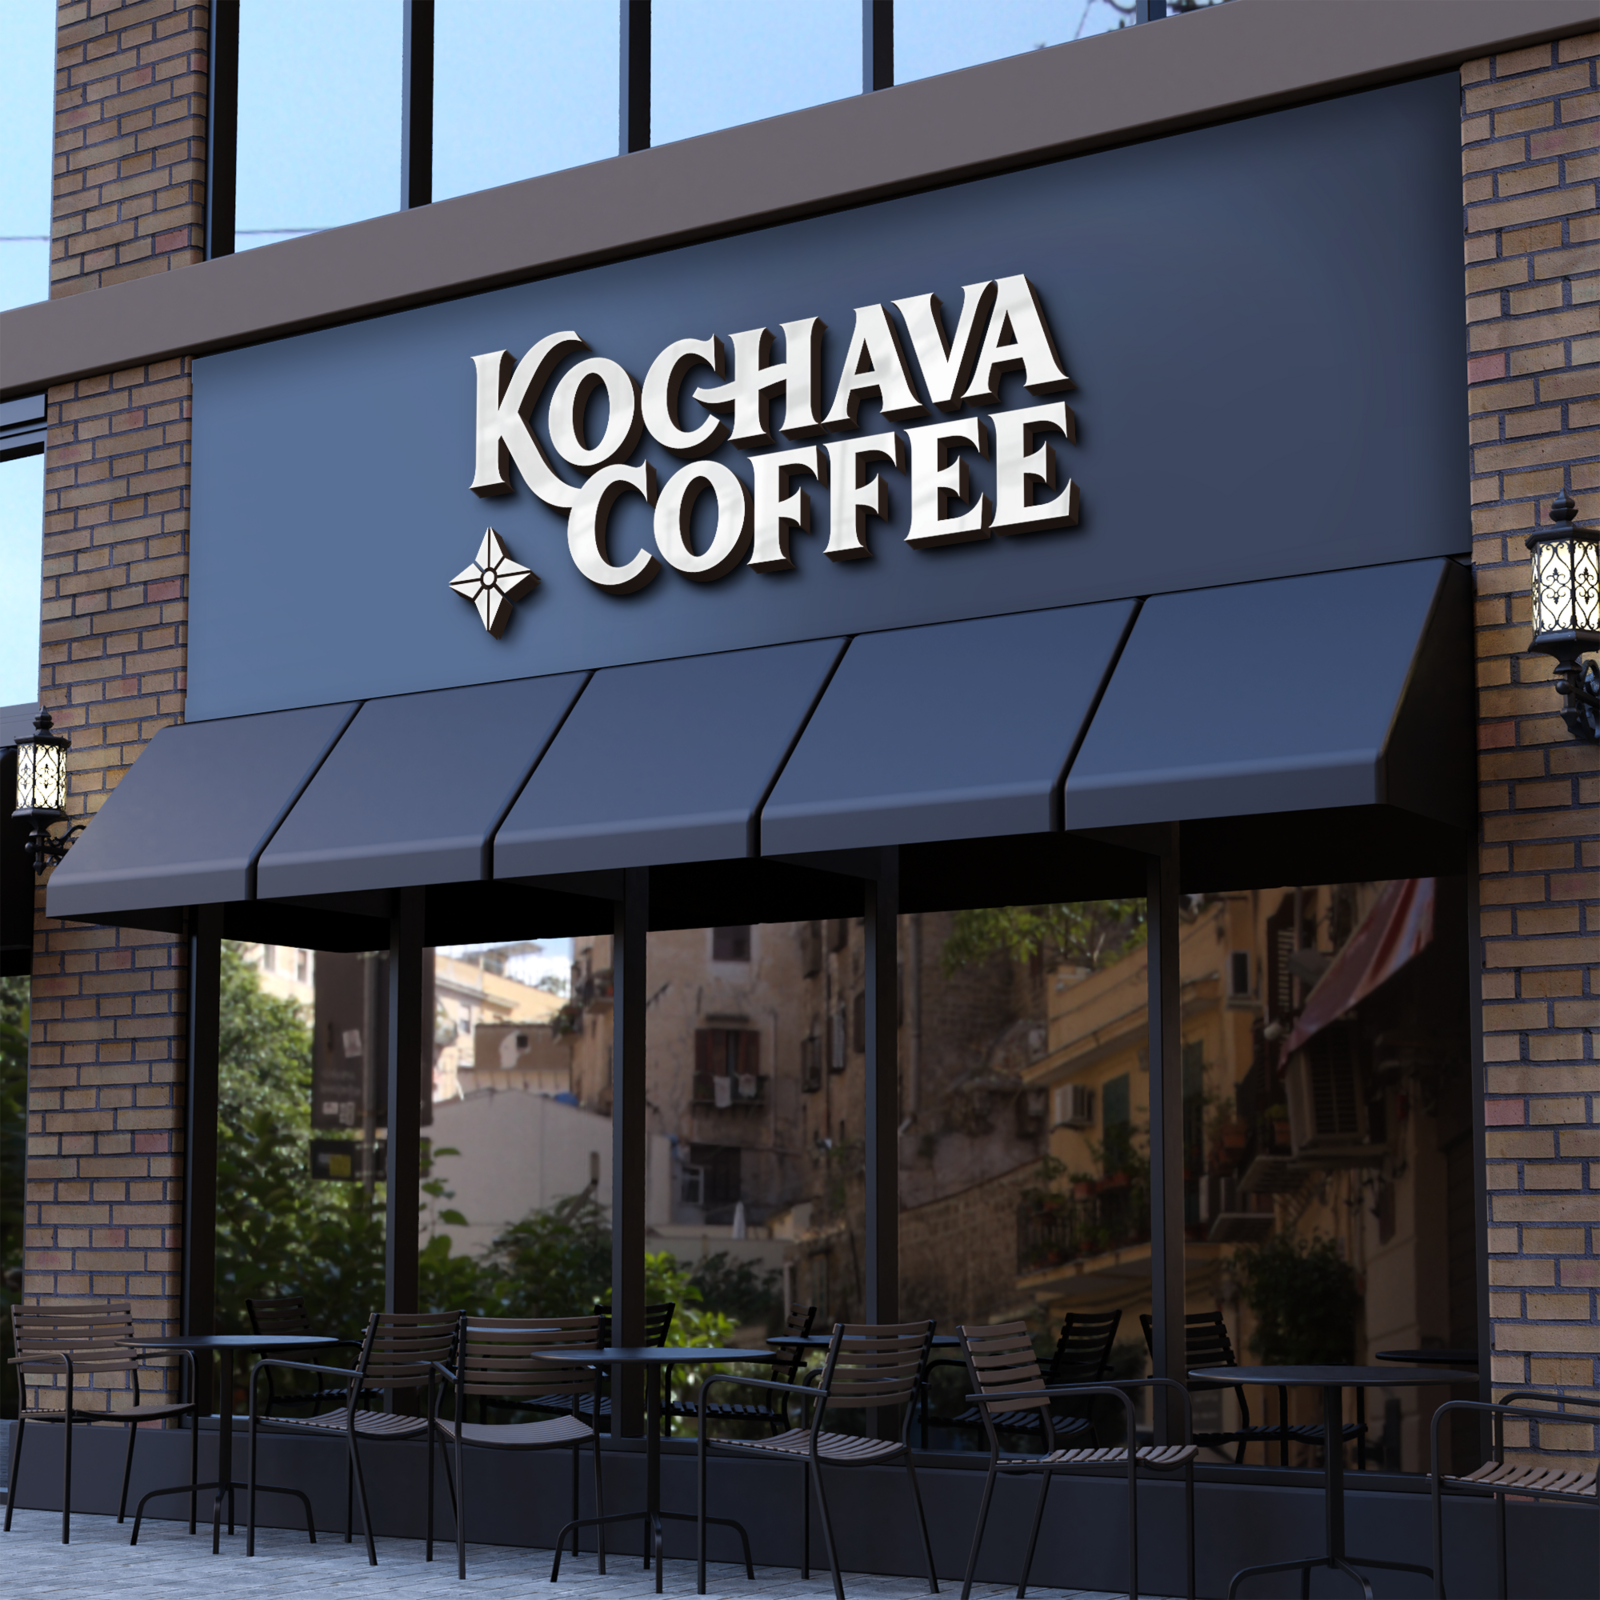 Kochava Coffee Elevation Mockup 2